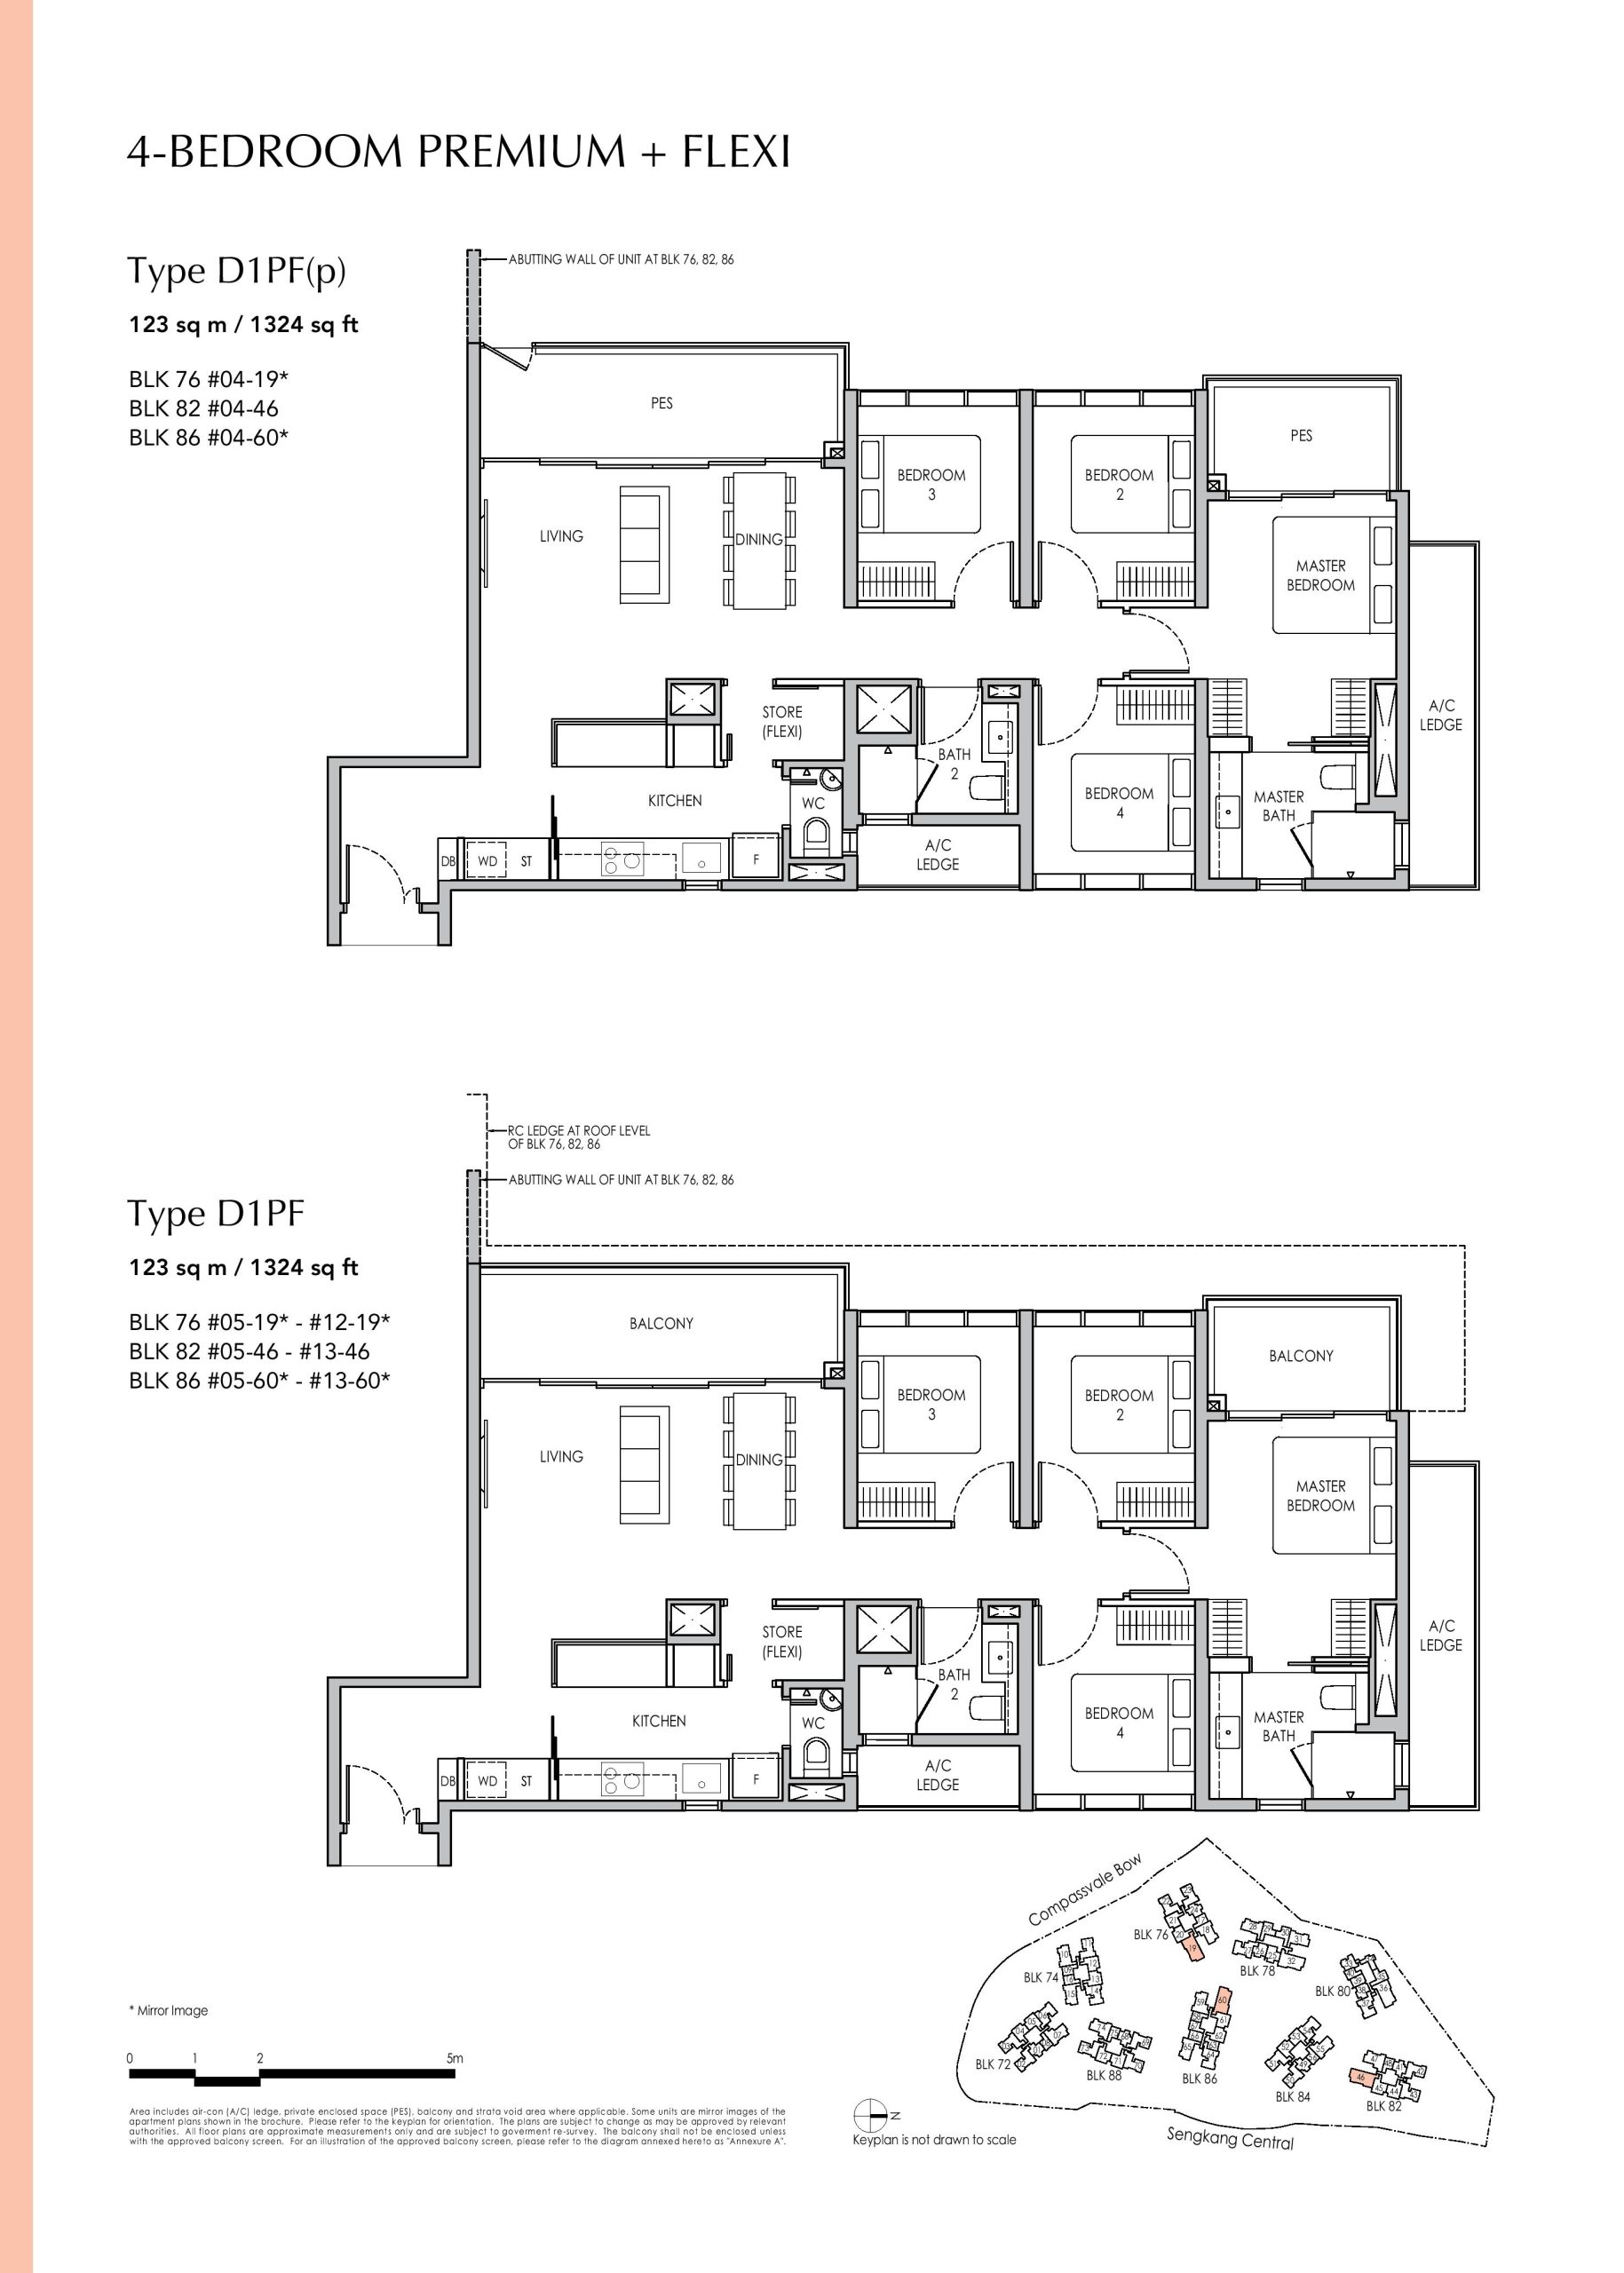 Sengkang Grand Residences 4 Bedroom Premium + Flexi Type D1PF(p), D1PF Floor Plans